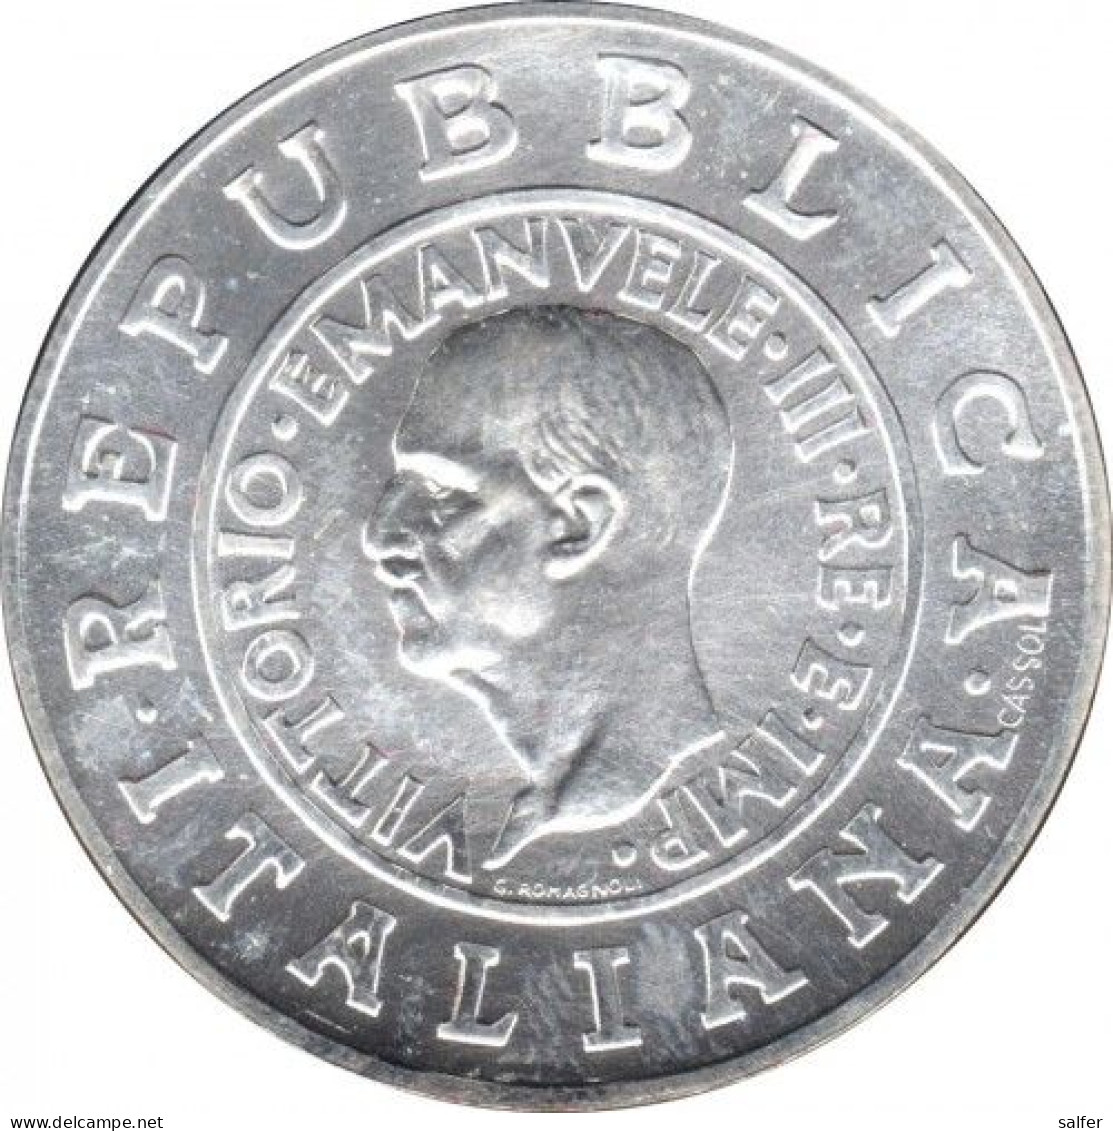 REPUBBLICA  2000  STORIA DELLA LIRA   Lire 1 AG - Gedenkmünzen